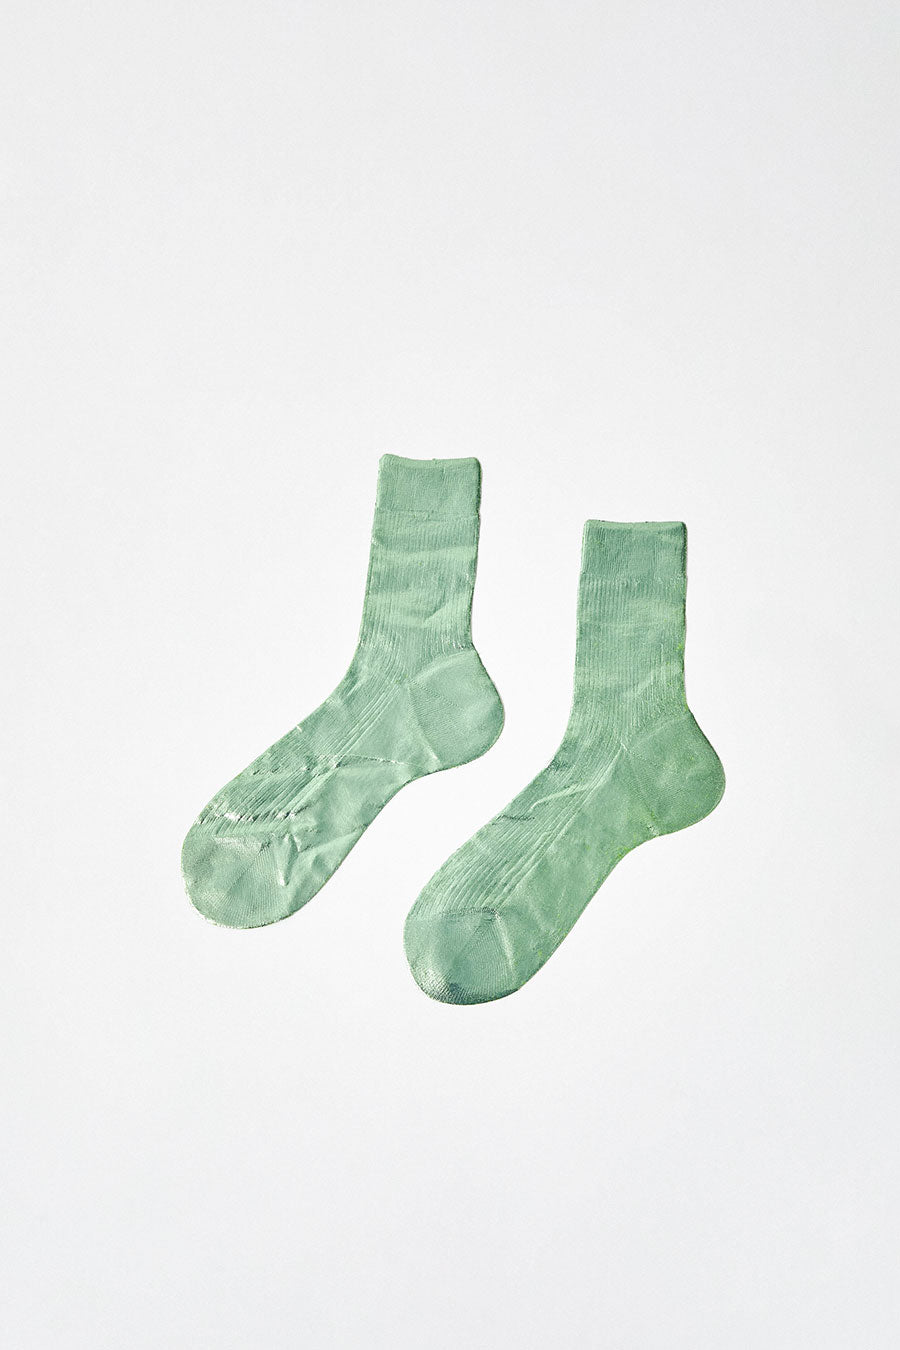 Maria La Rosa Silk Ribbed Laminated Ankle Socks in Verdino